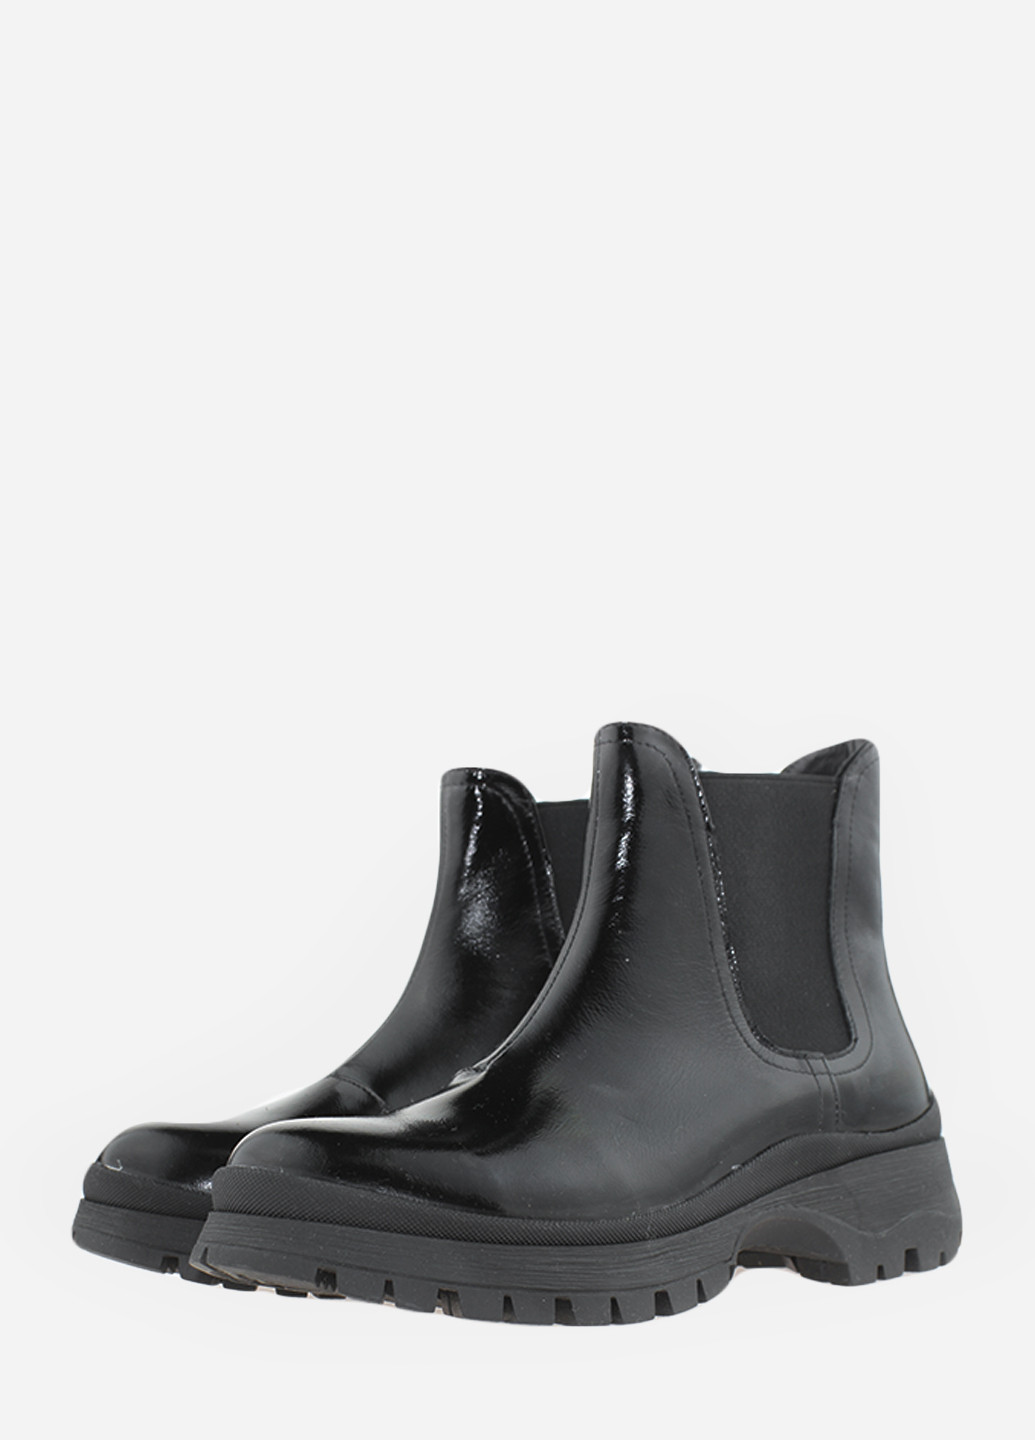 Осенние ботинки rhit196-1 черный Hitcher